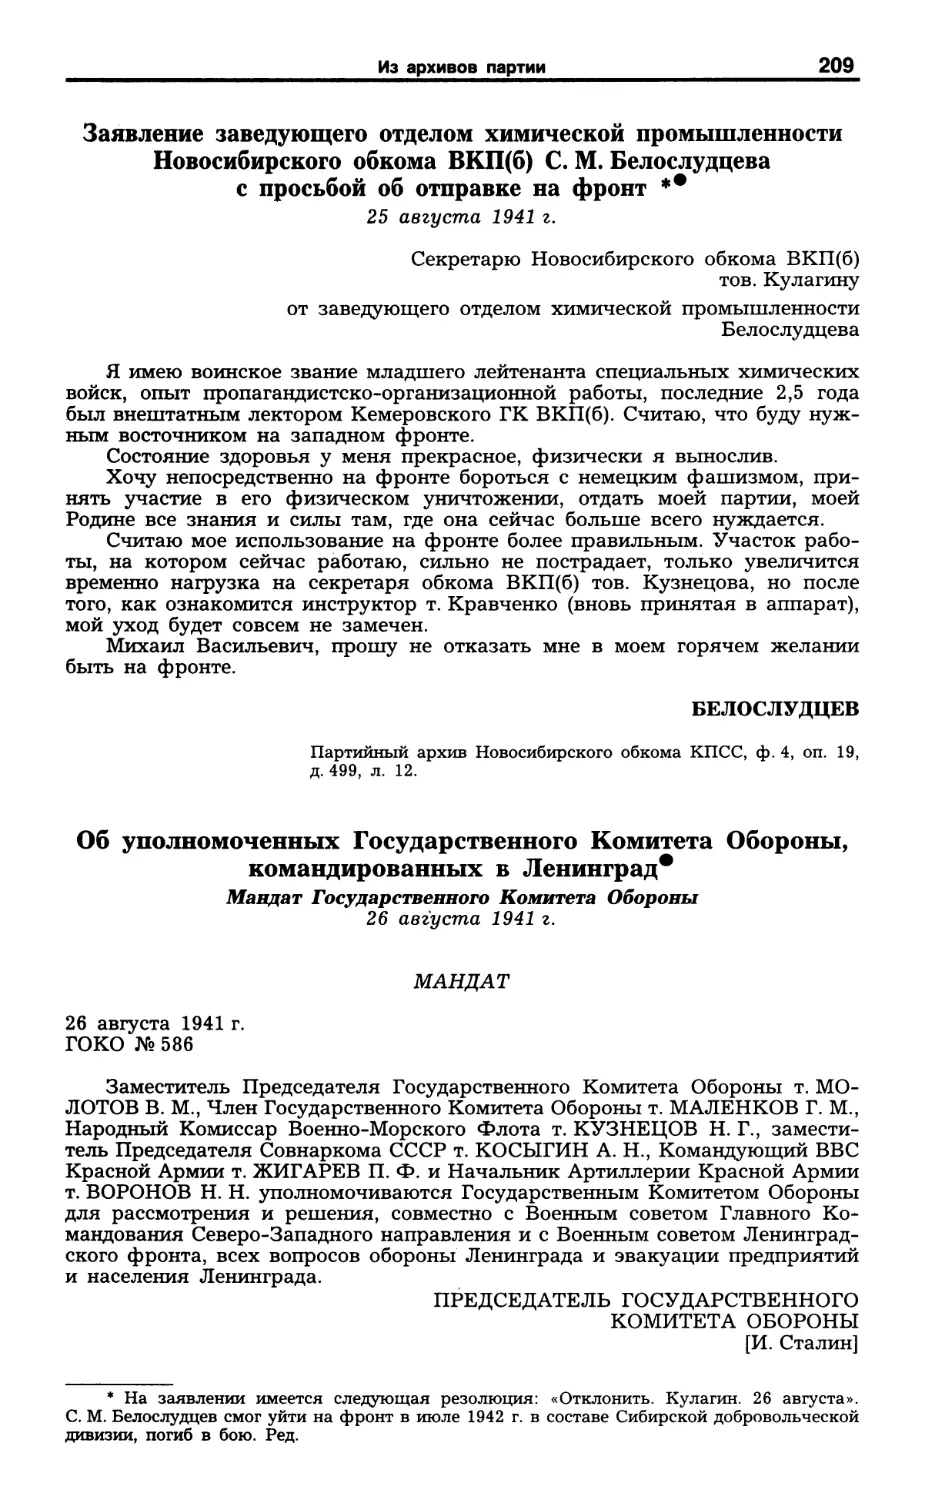 Заявление С. М. Белослудцева. 25 августа 1941 г
Об уполномоченных ГКО, командированных в Ленинград. 26 августа 1941 г